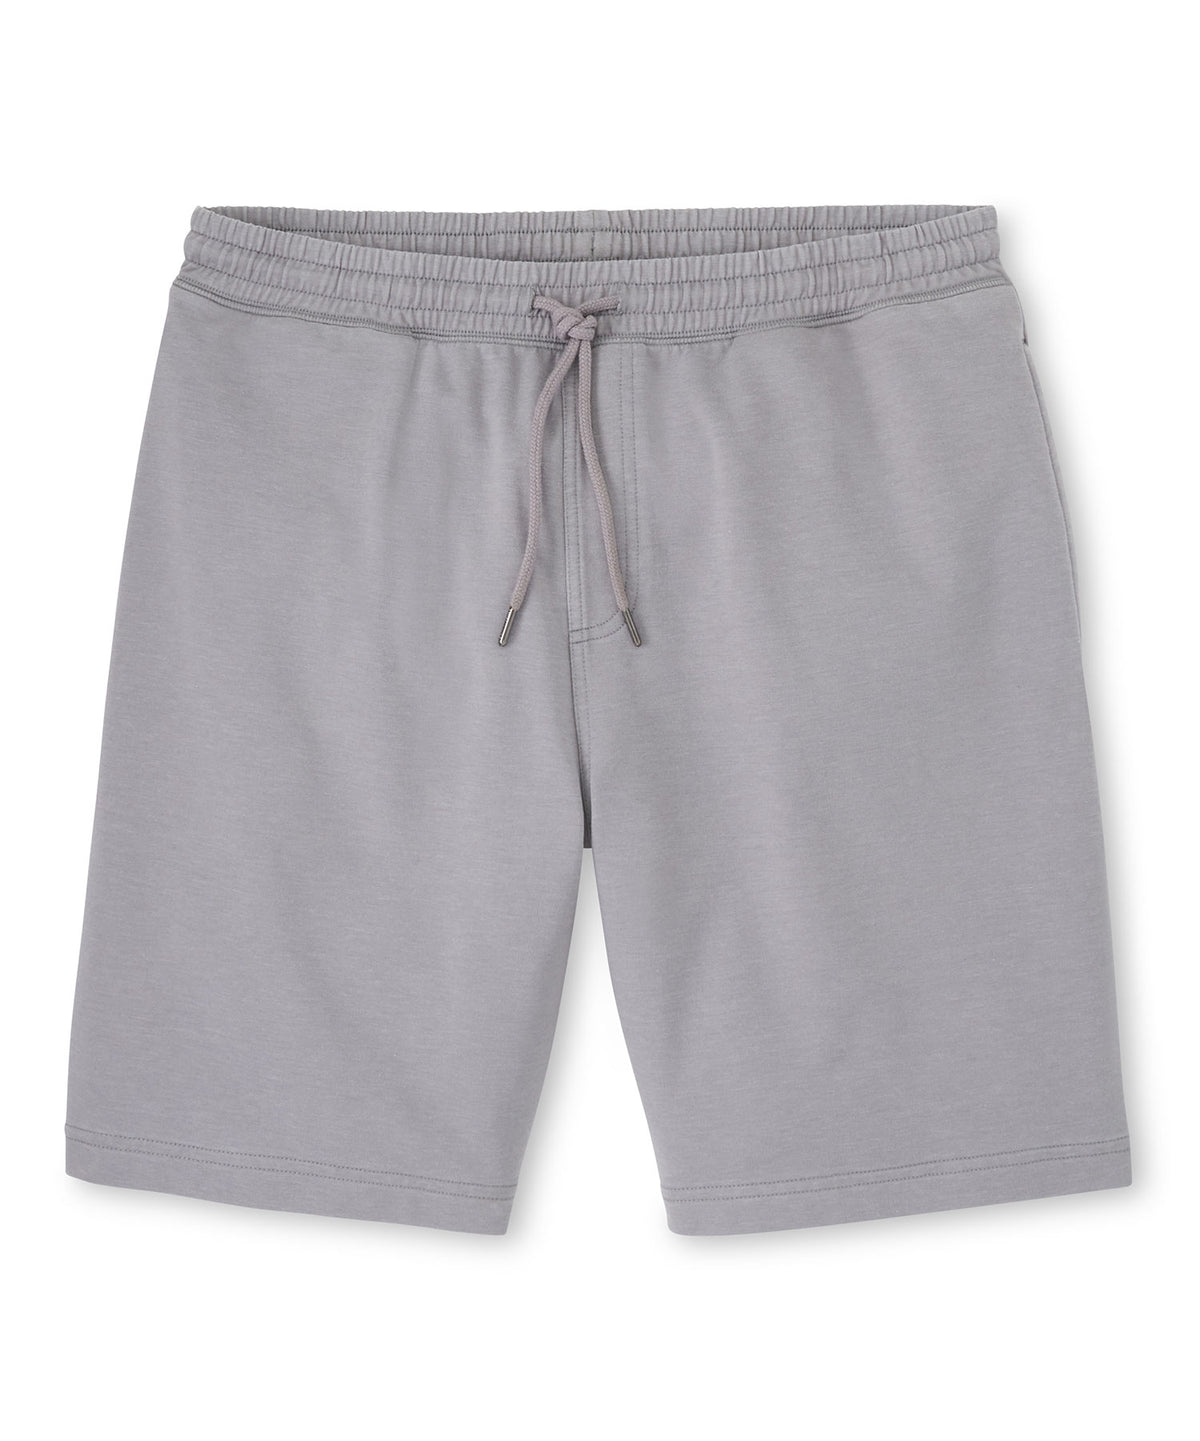 Peter Millar Lava Wash Pull-On Shorts, Big & Tall